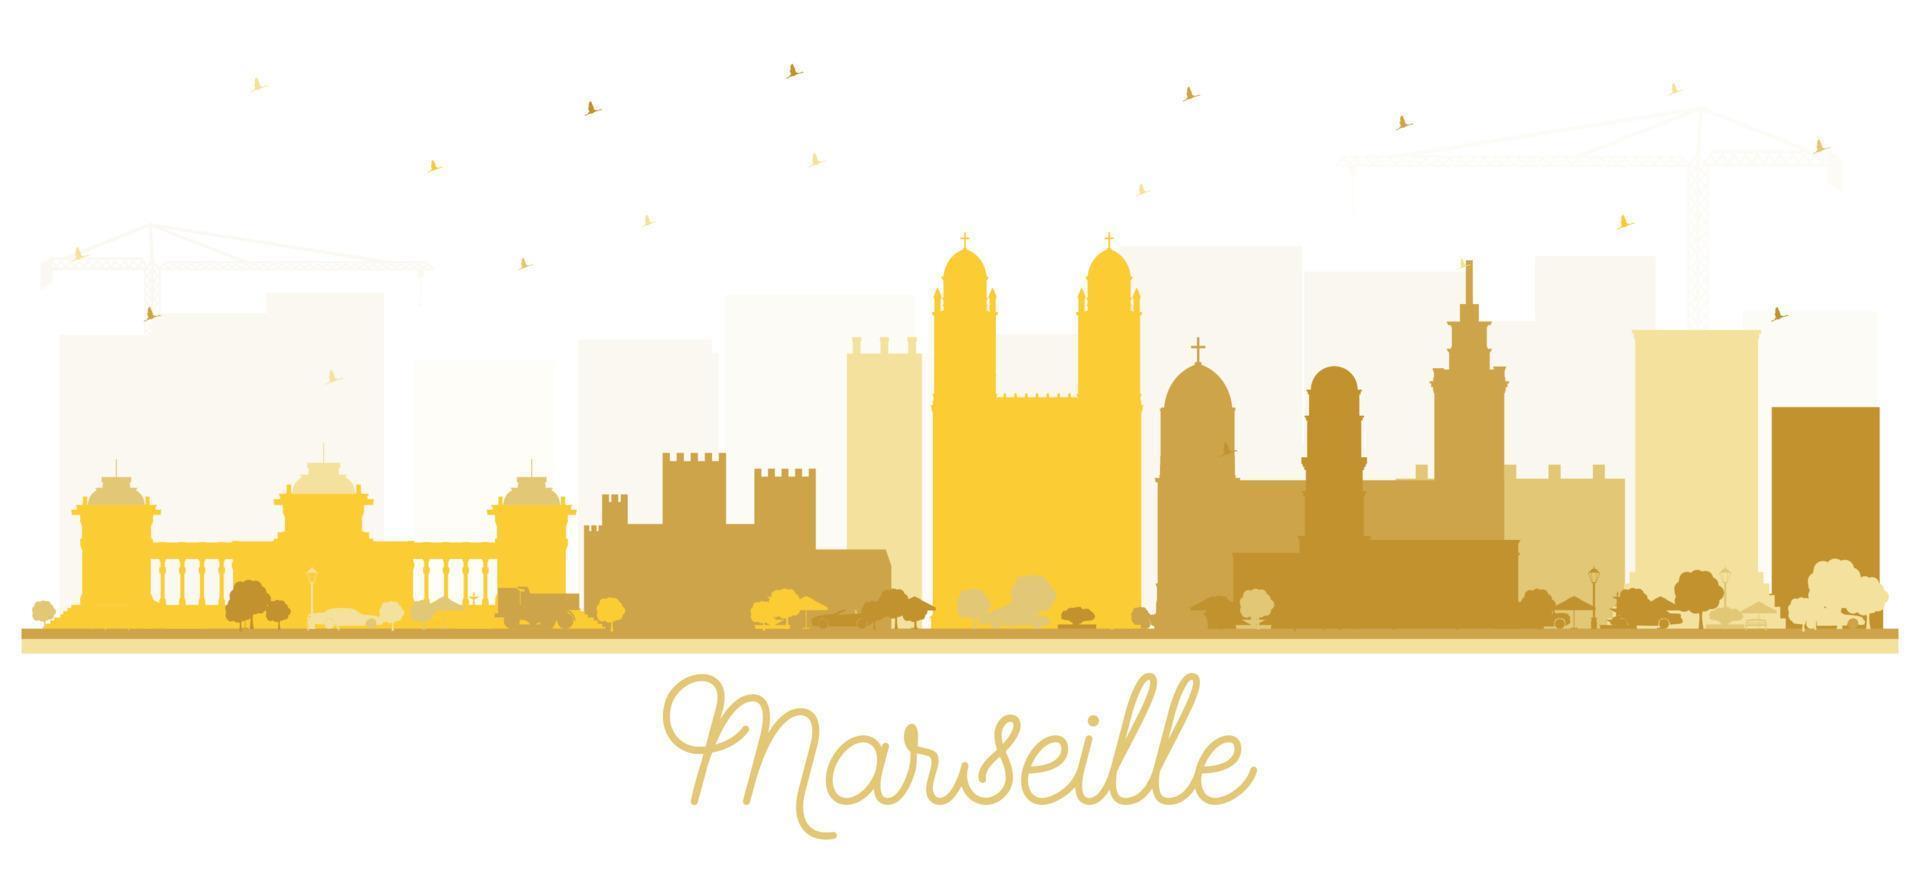 Marseille Frankreich City Skyline Silhouette mit goldenen Gebäuden. vektor